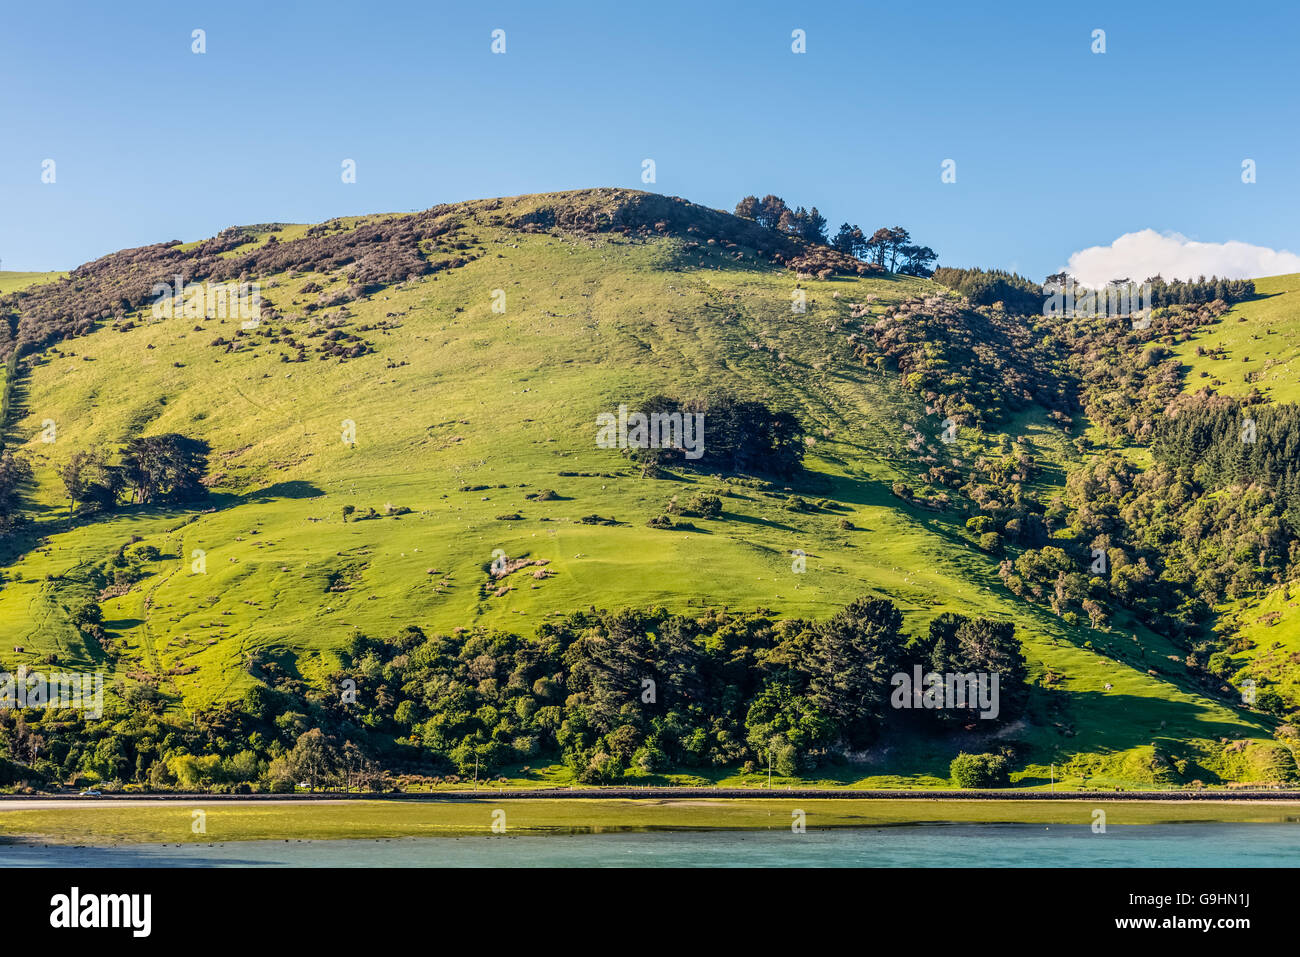 Beau paysage de la Nouvelle-Zélande - collines couvertes par l'herbe verte avec des troupeaux de moutons - près de Dunedin Banque D'Images